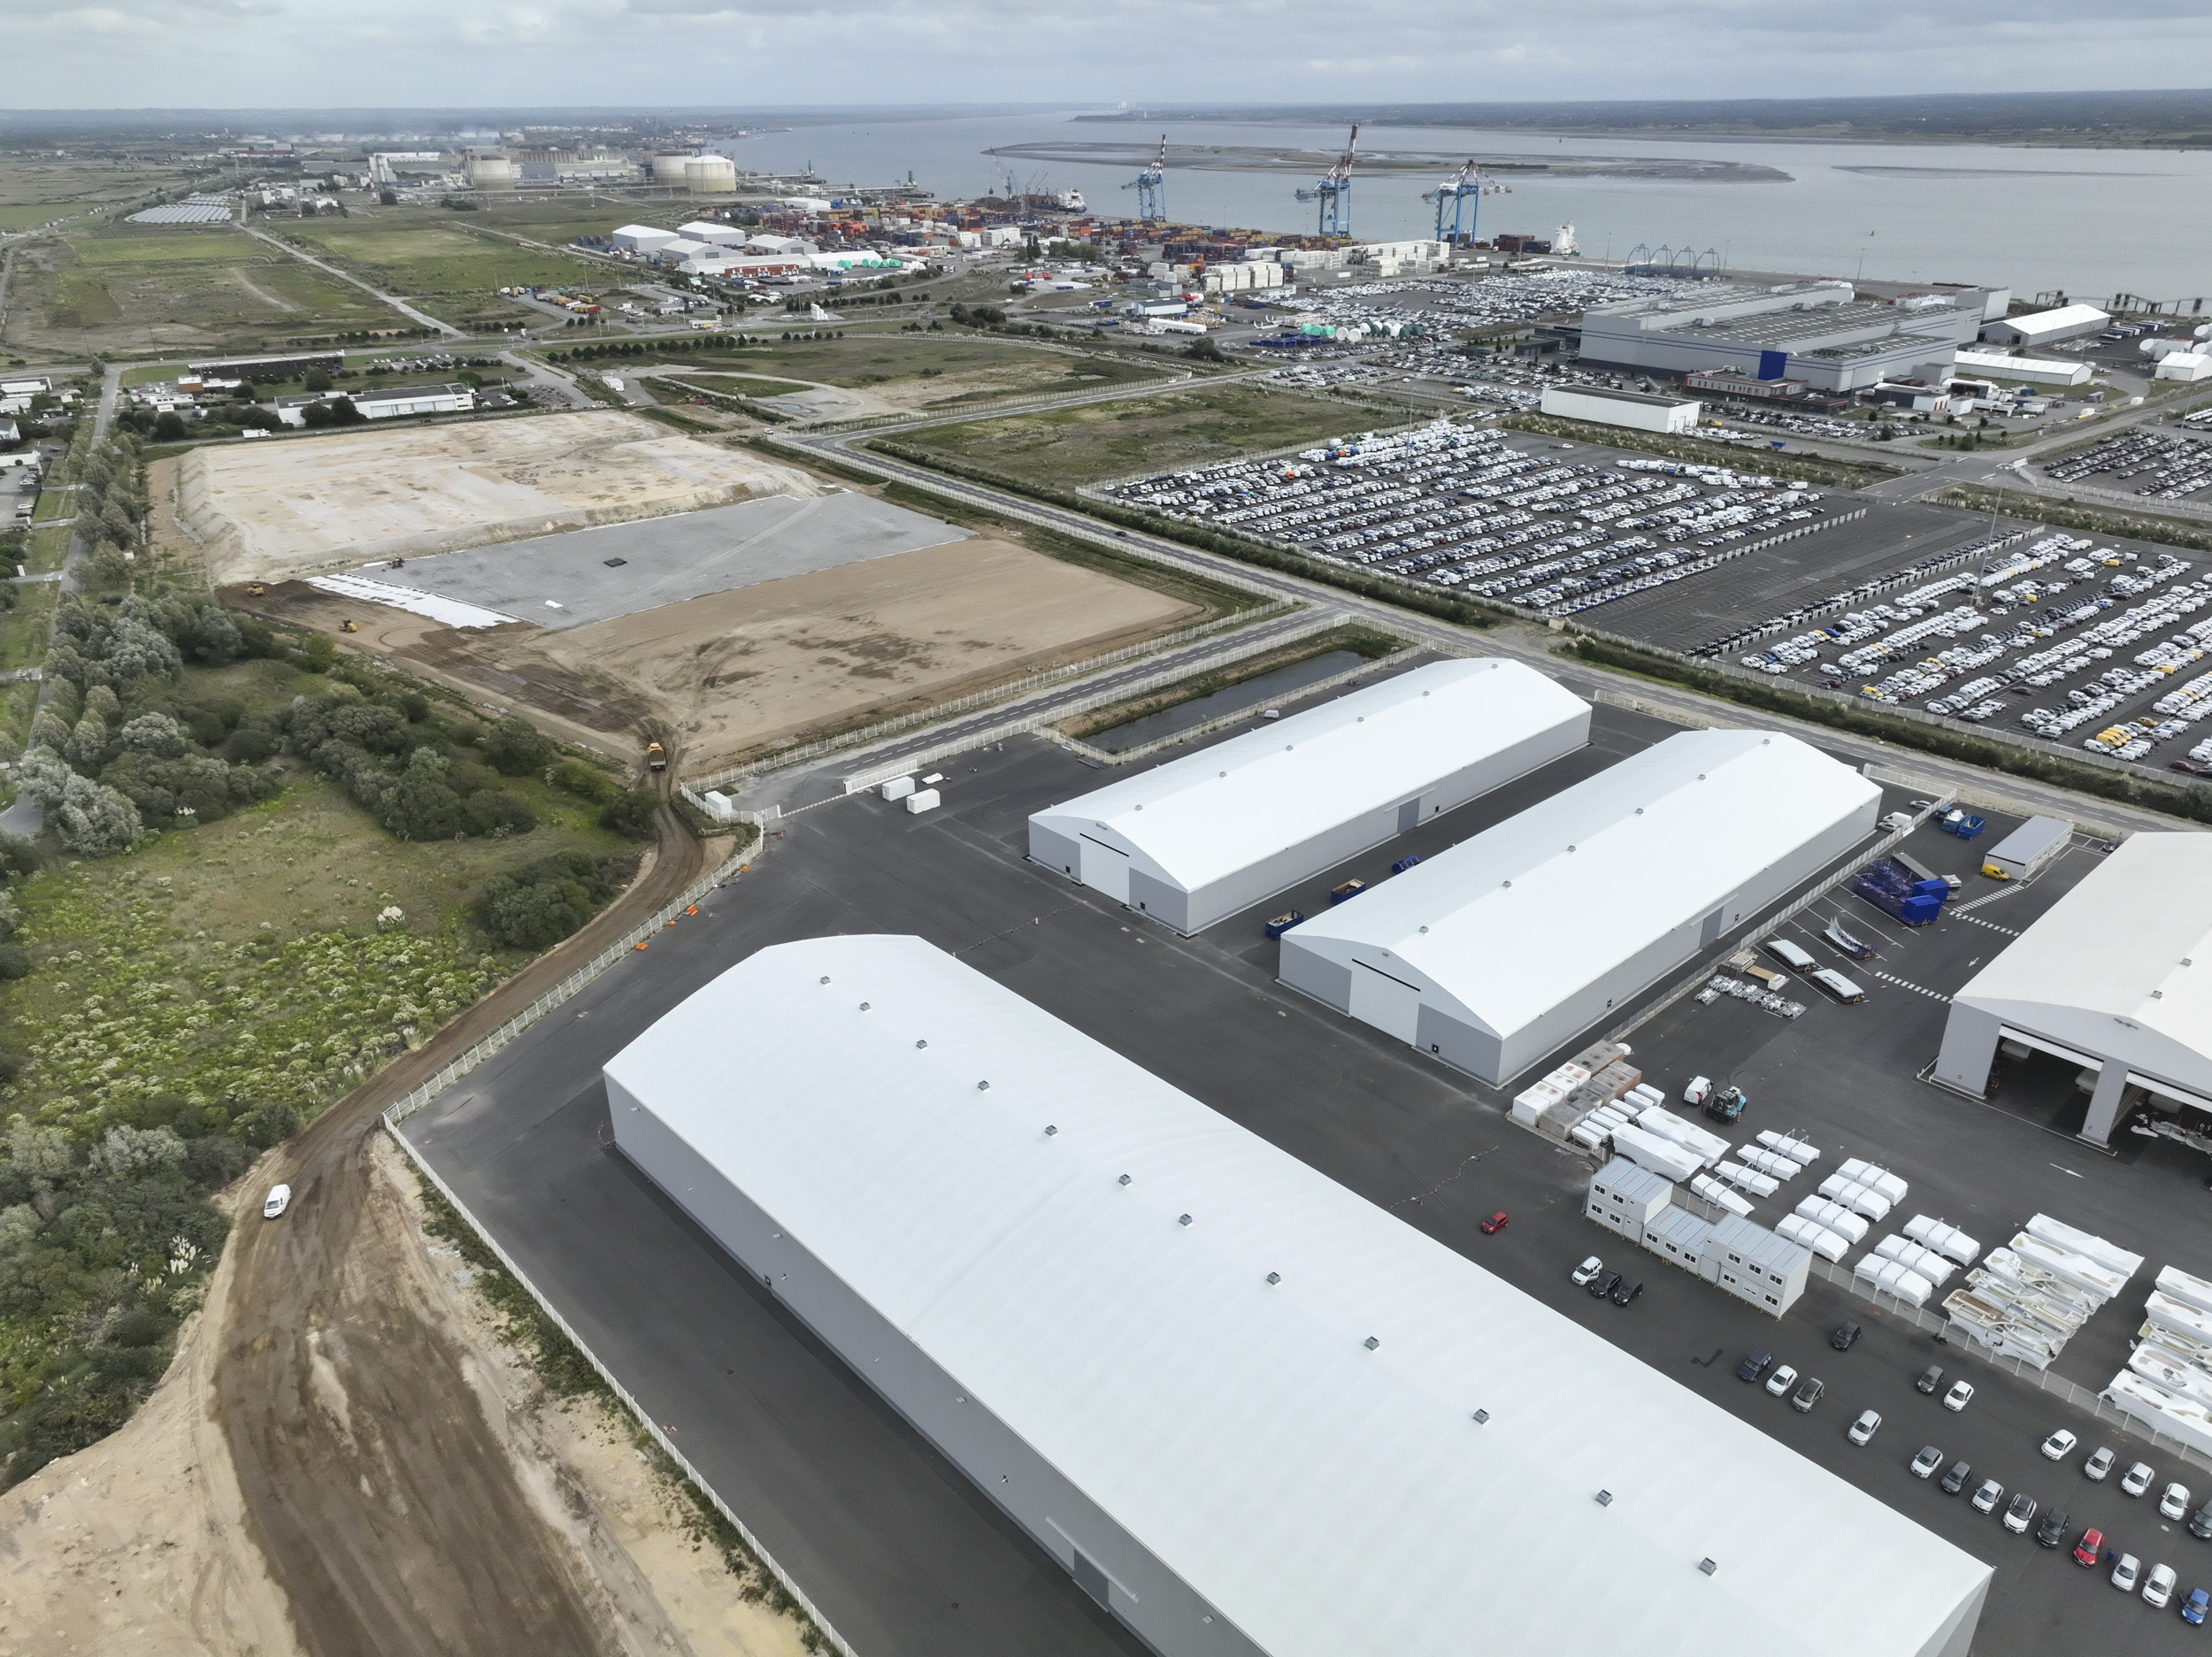 Réindustrialisation : la zone industrialo-portuaire de Saint-Nazaire, l'un des 55 sites « clés en main », veut attirer les entreprises